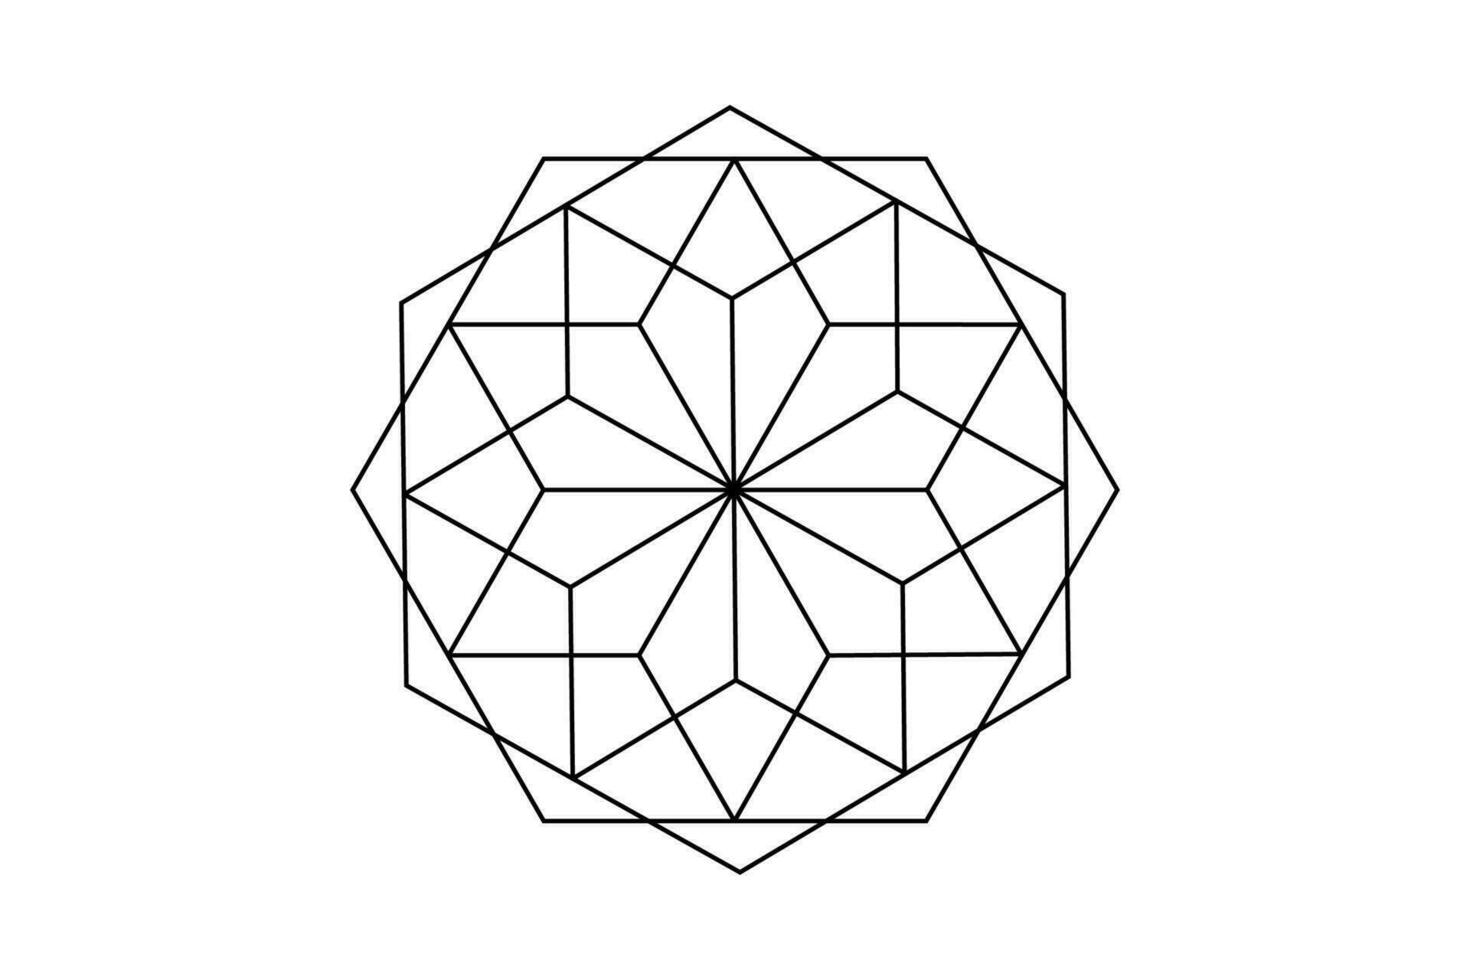 mandala av helig gammal geometri. vektor symboler och element. alkemi, religion, filosofi, astrologi och andlighet teman. logotyp ikon isolerat på vit bakgrund